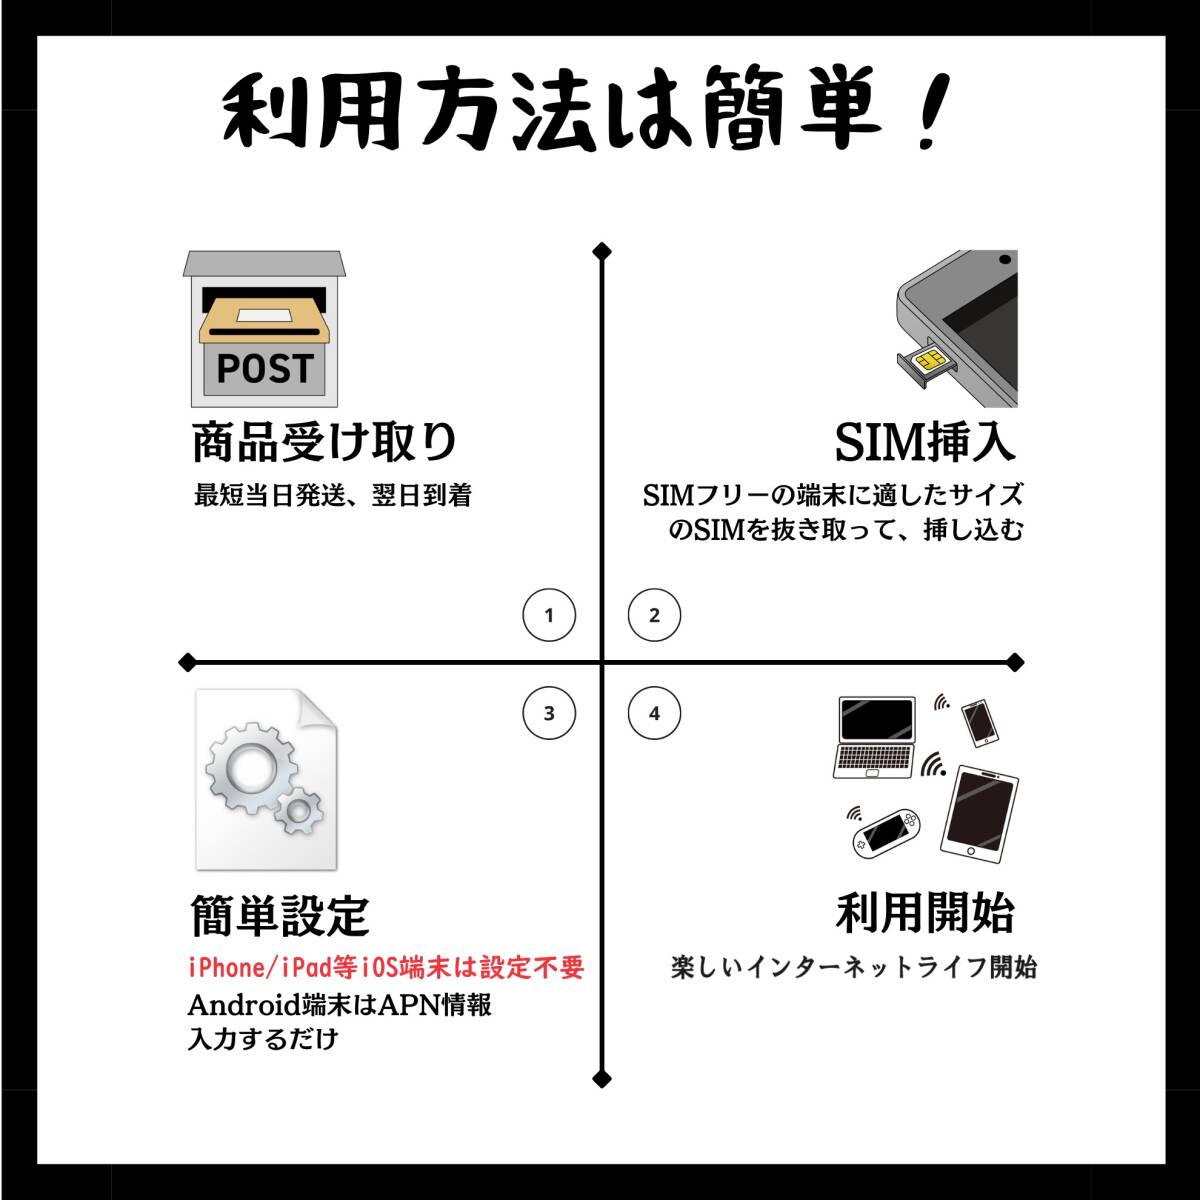 SIM for Japan 日本国内用 180日間 10GB (標準/マイクロ/ナノ)3-in-1 docomo データ通信専用 4G-LTE SIMカード/NTTドコモ 通信網_画像6